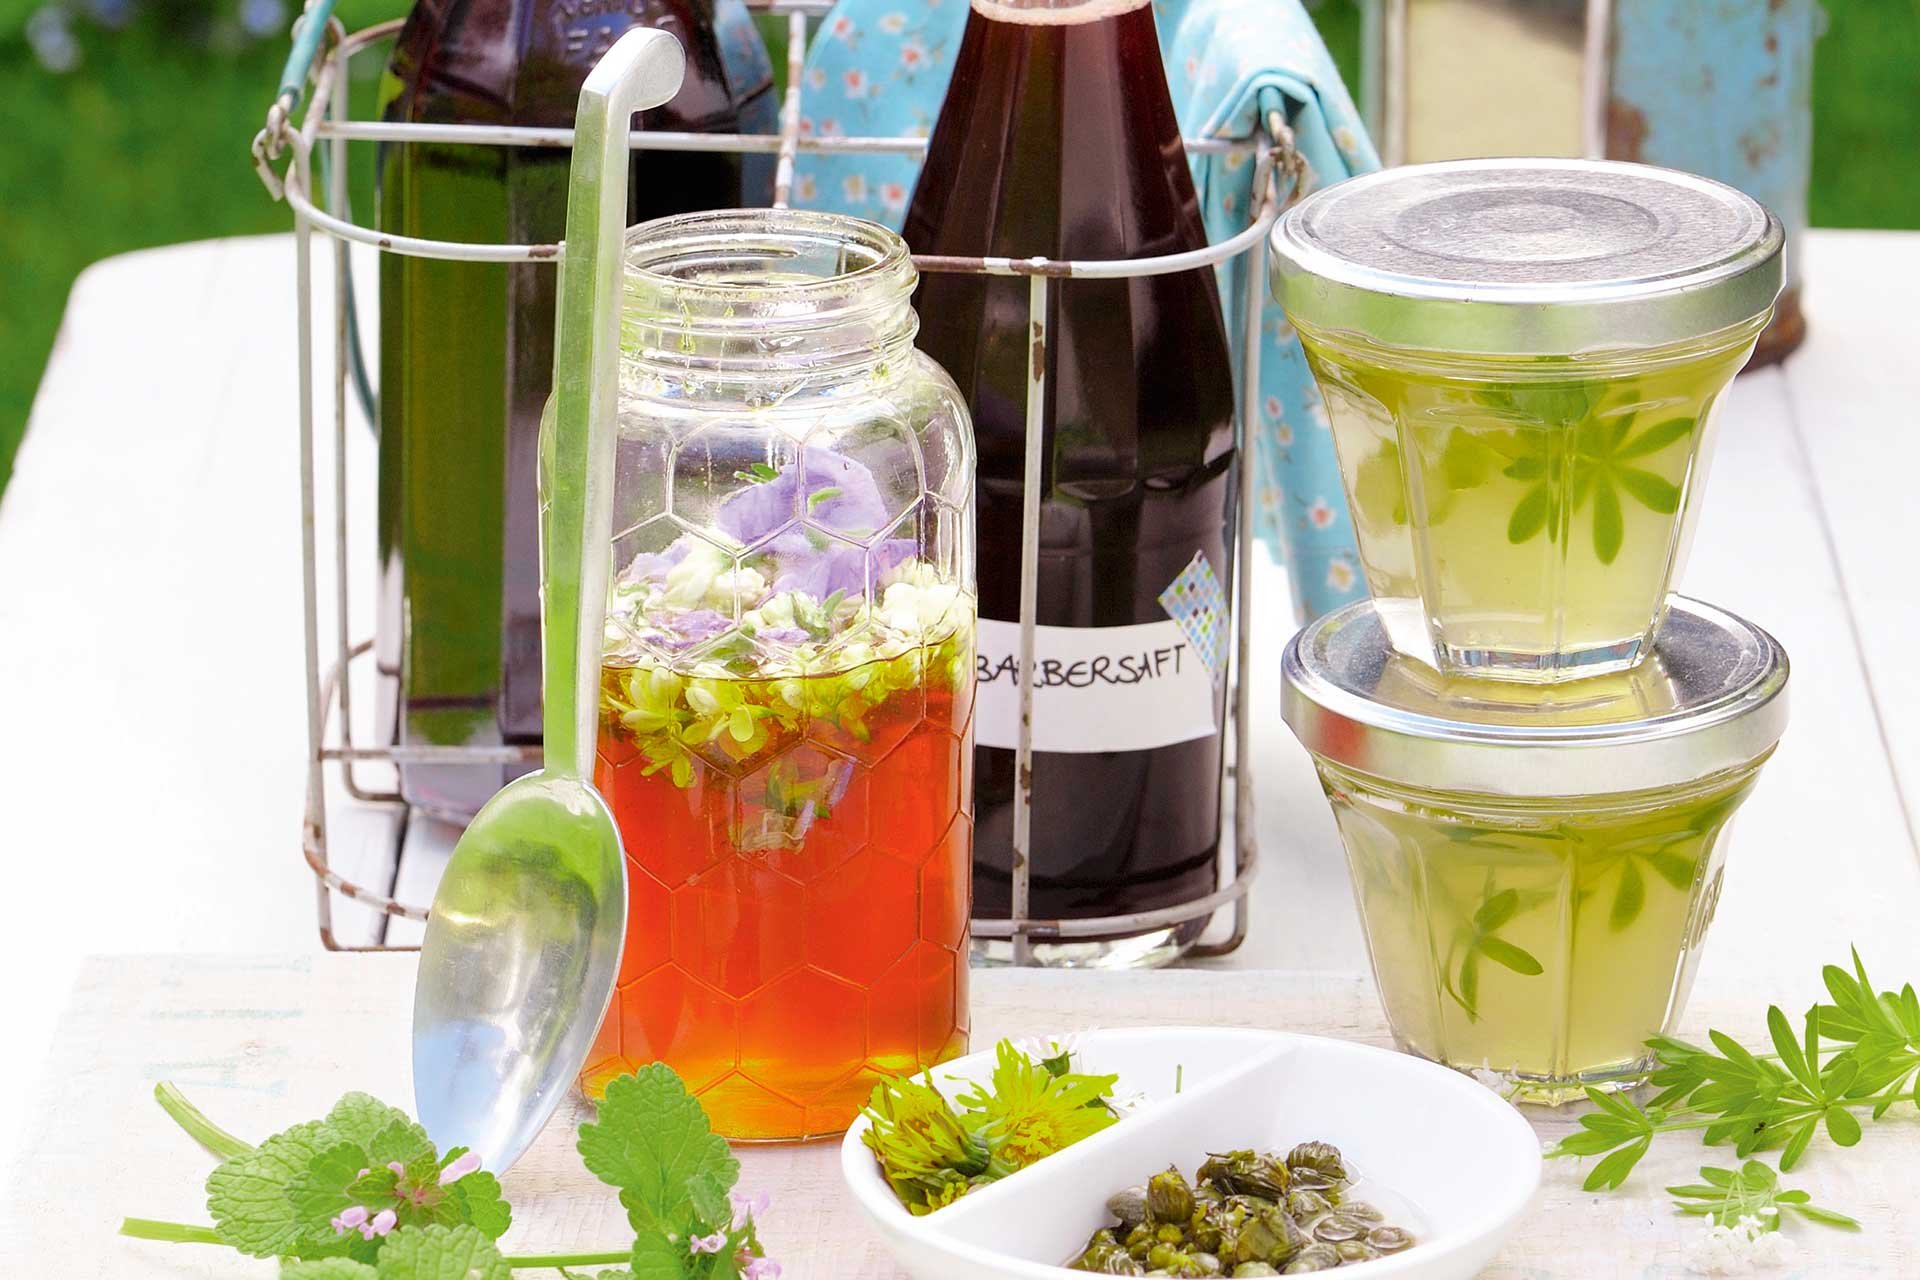 Alkoholfreie Getränke spielen in der gehobenen Gastronomie eine stetig wachsende Rolle,  seien es Sirup, Frucht- und Gemüsesäfte oder Tees.